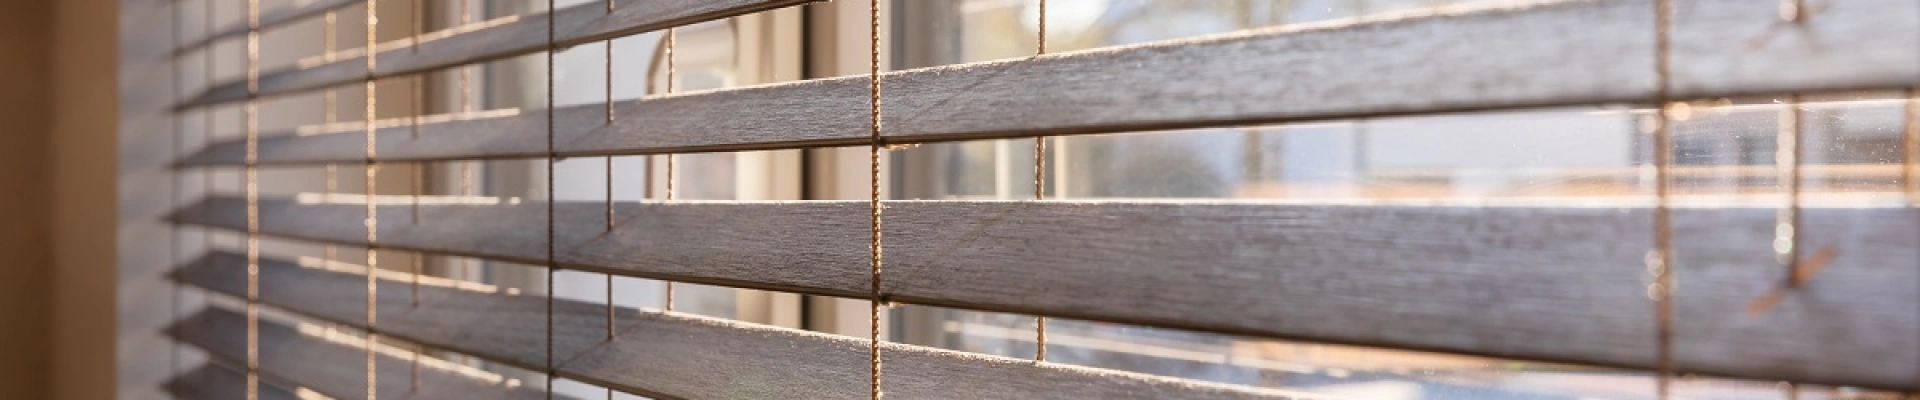 Bruine houten jaloezieën voor het raam